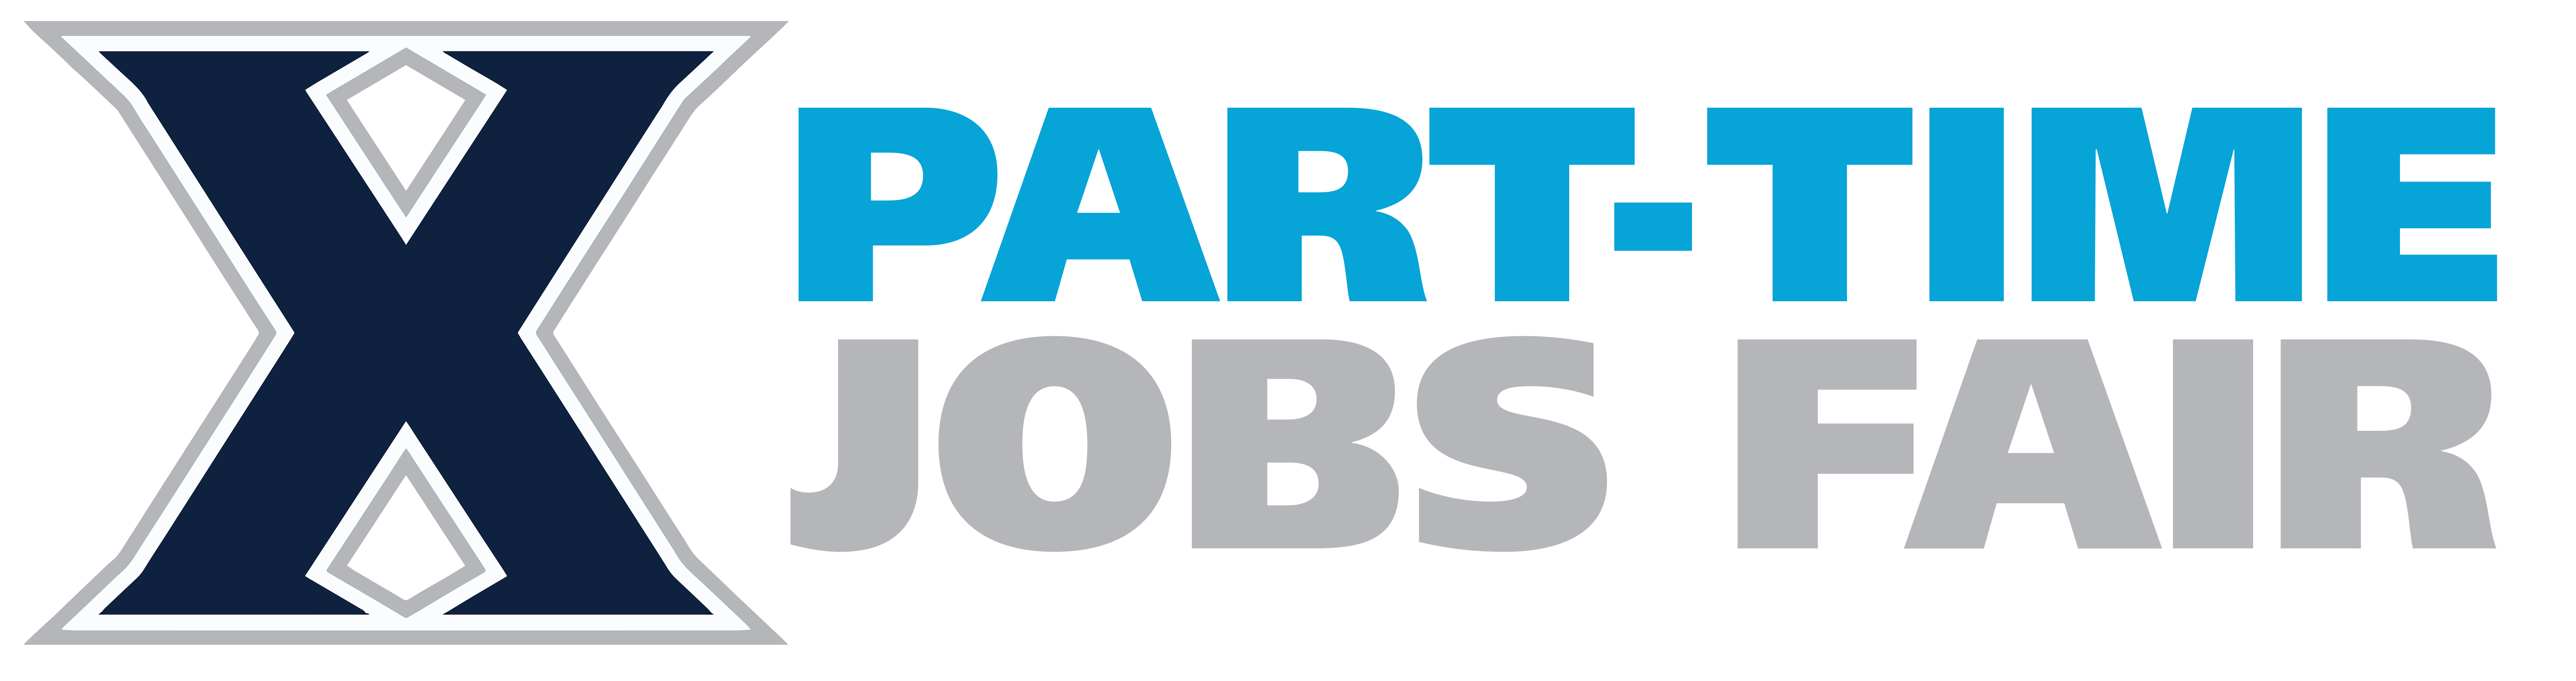 XU Part-Time Job's Fair logo